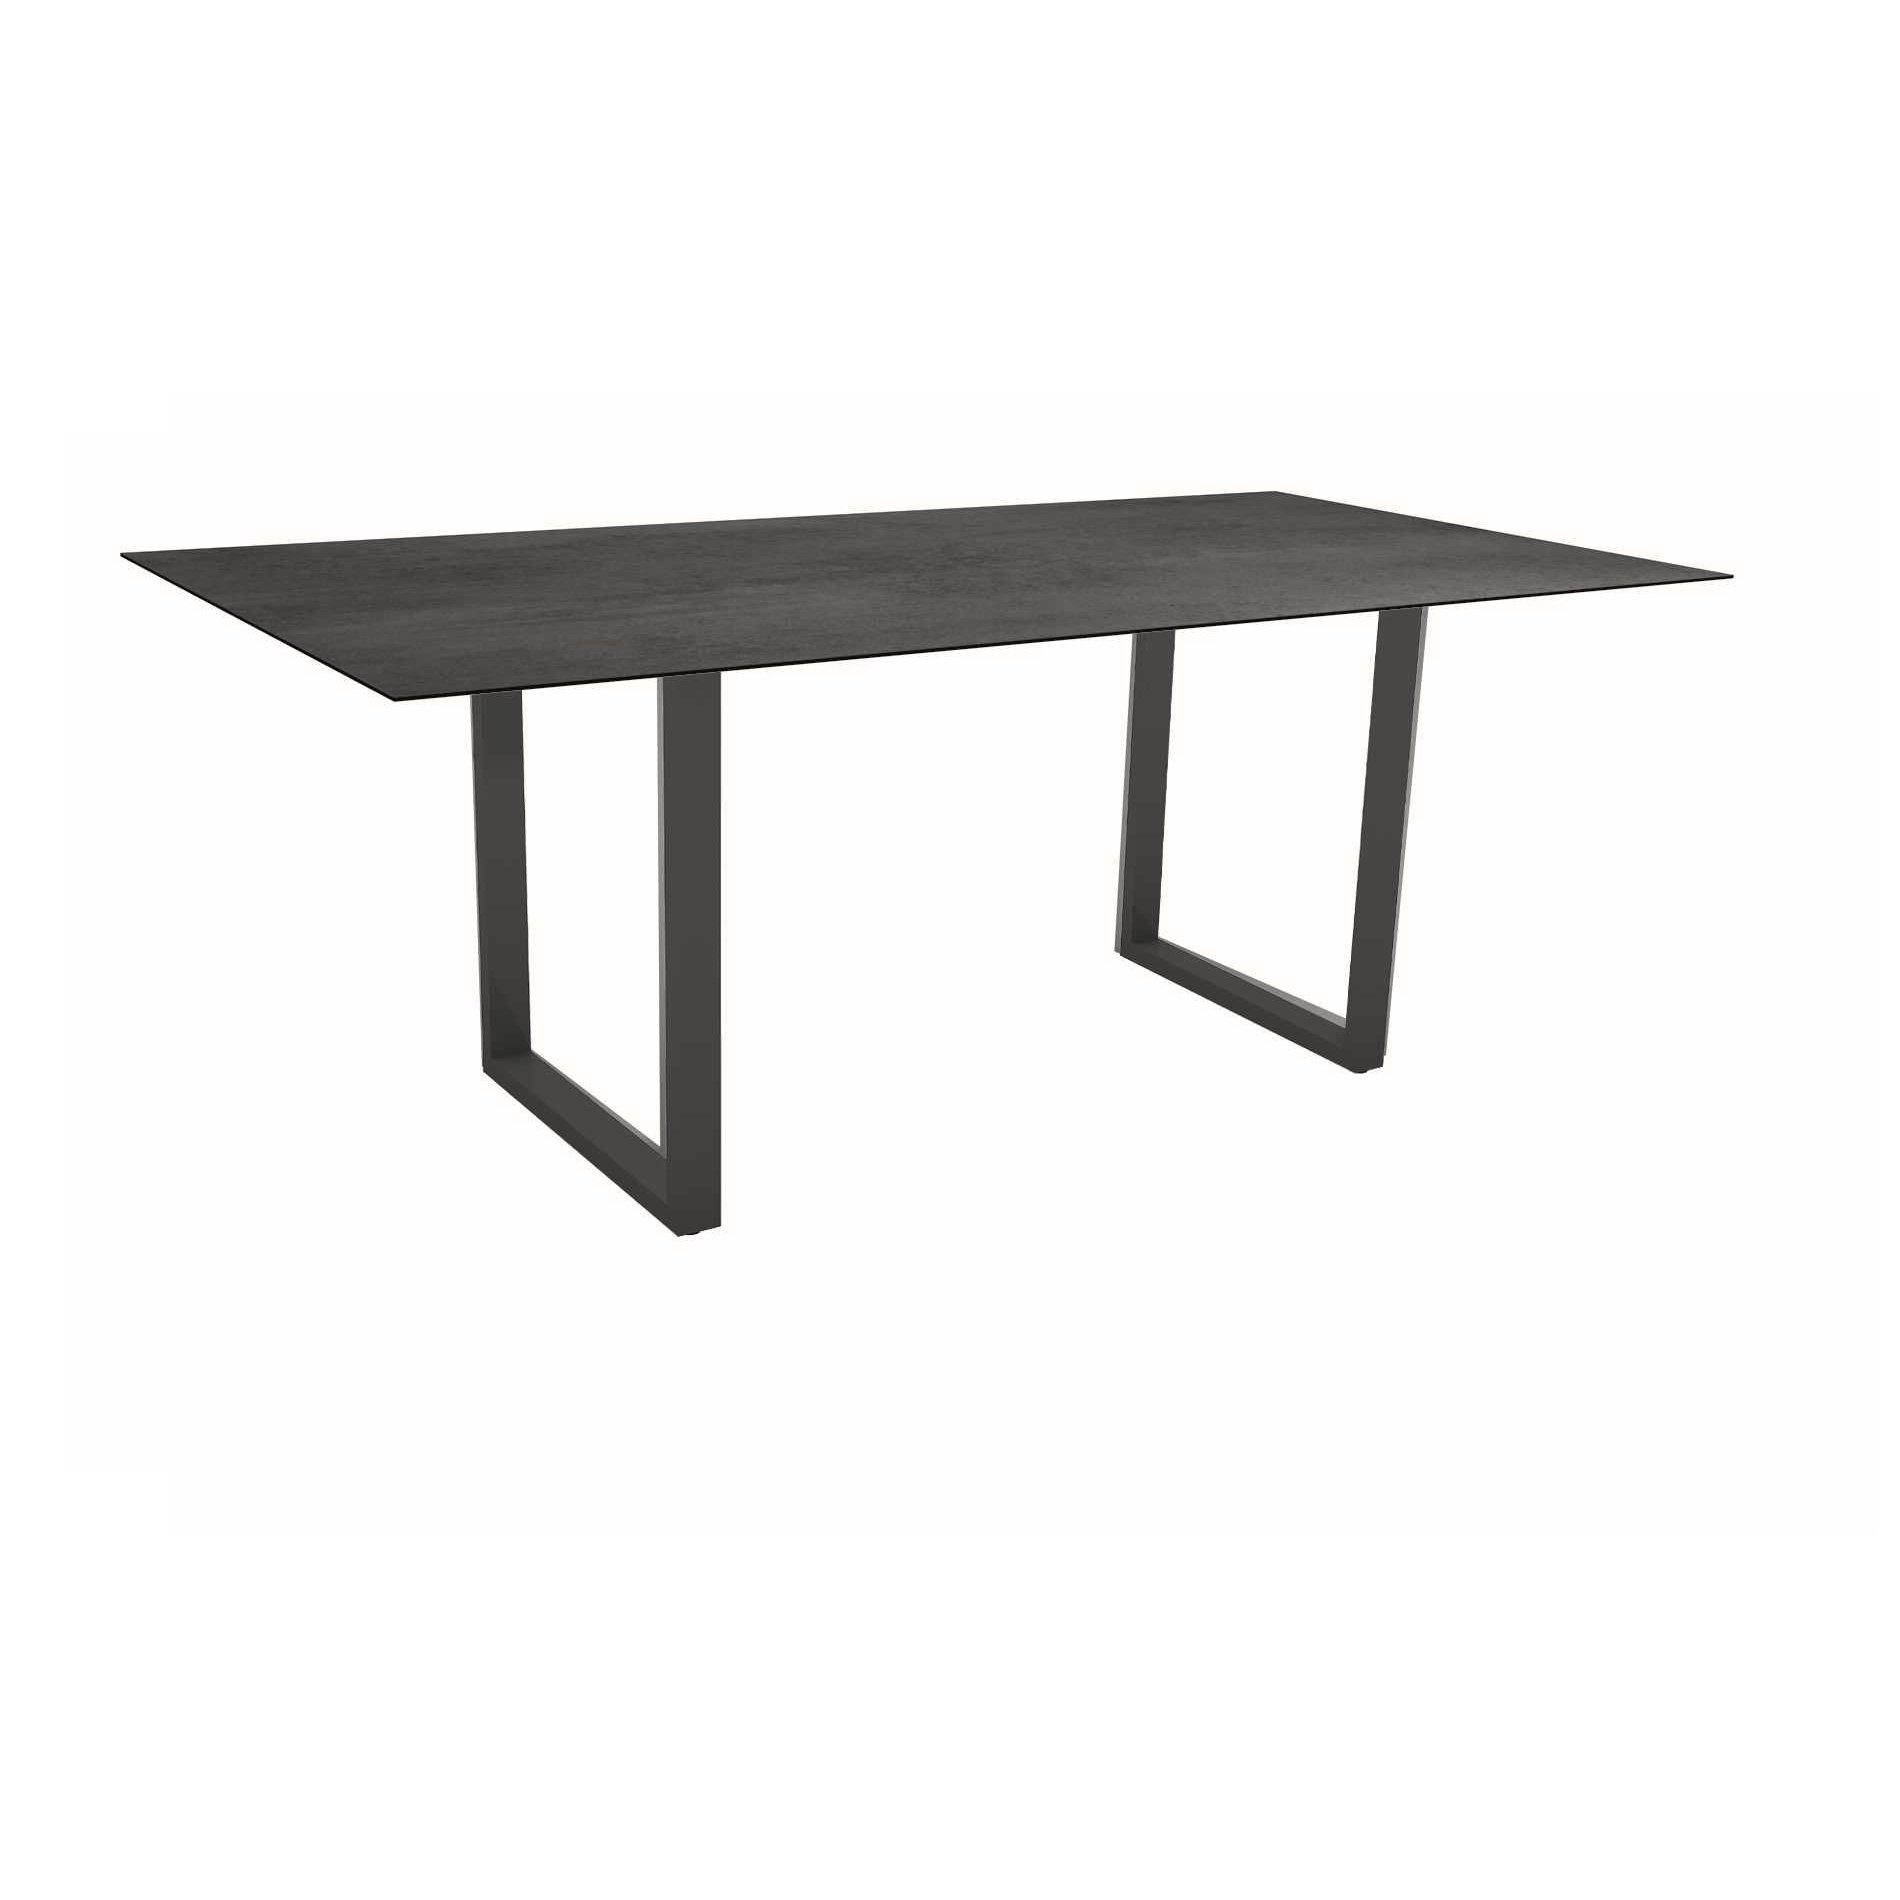 Stern Kufentisch, Maße: 200x100x73 cm, Gestell Aluminium anthrazit, Tischplatte HPL Nitro